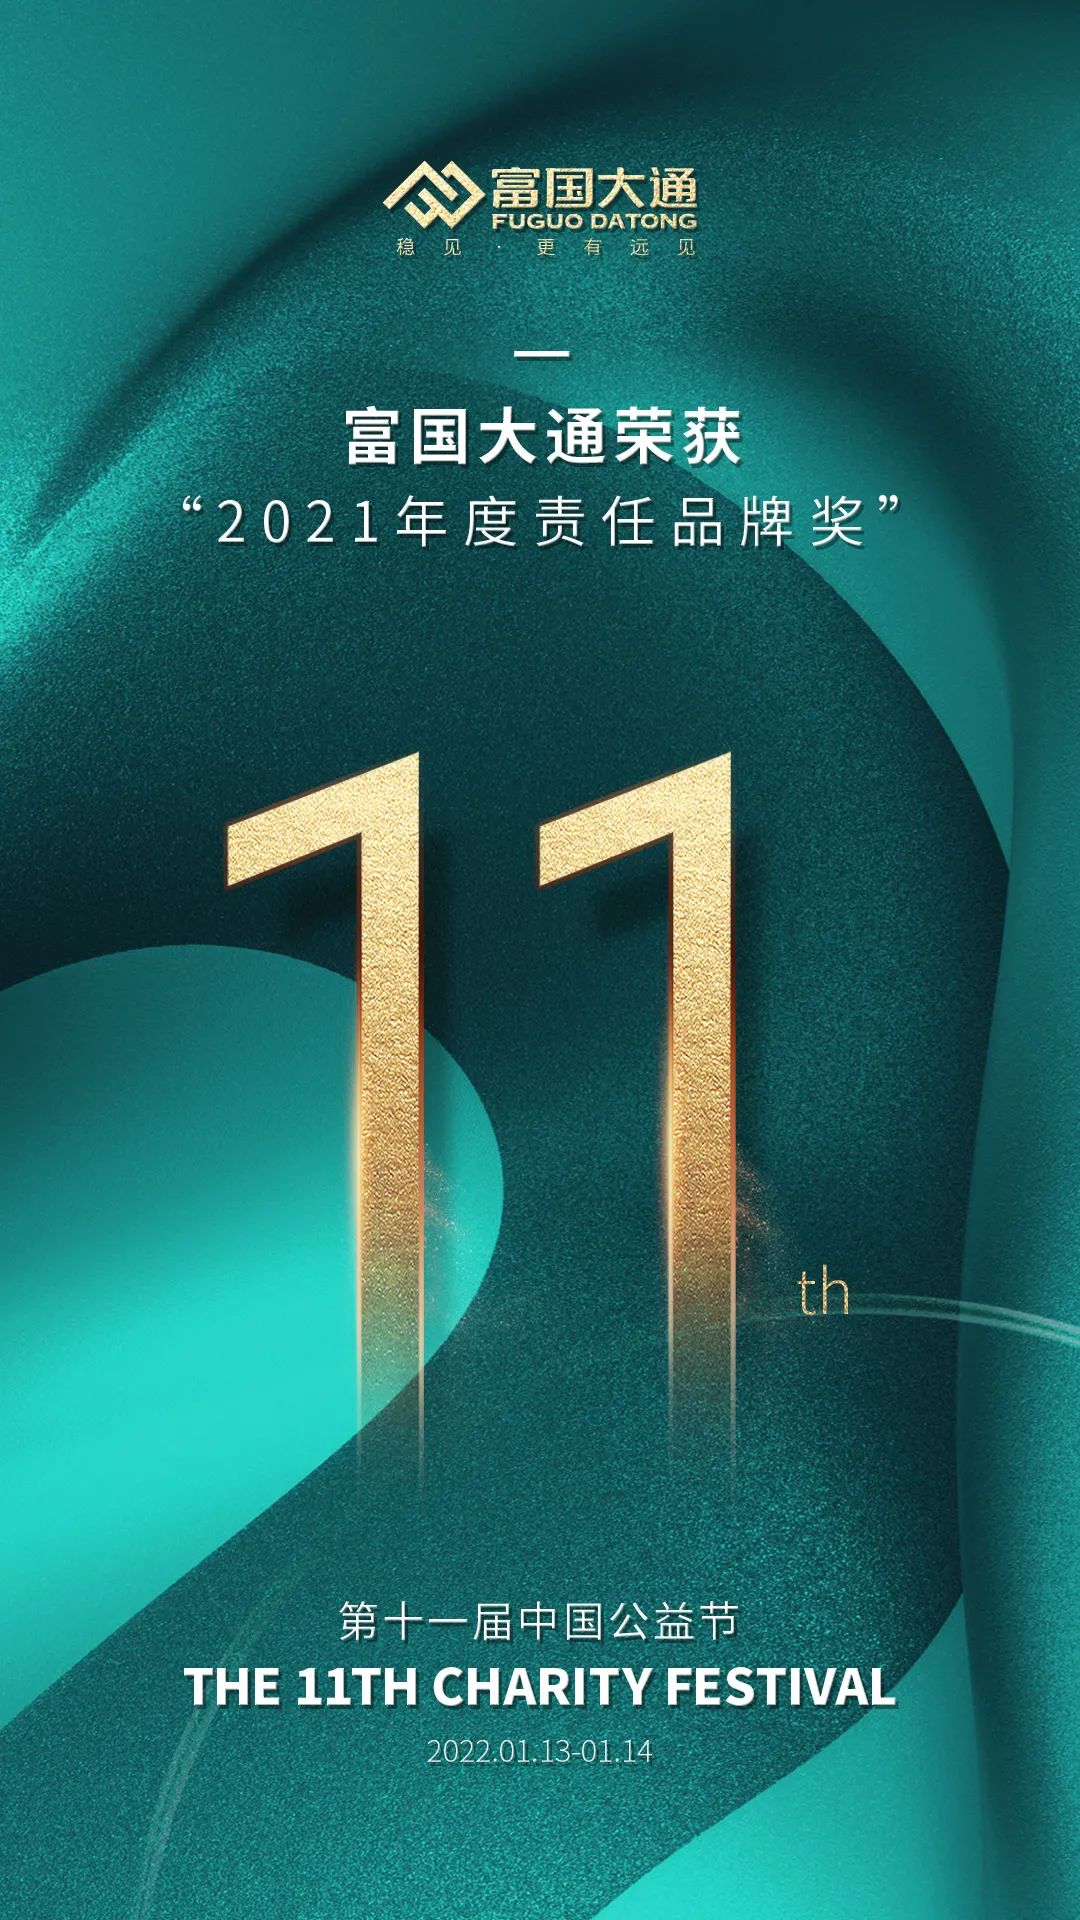 担当责任传递爱，富国大通喜获中国公益节“2021年度责任品牌奖”